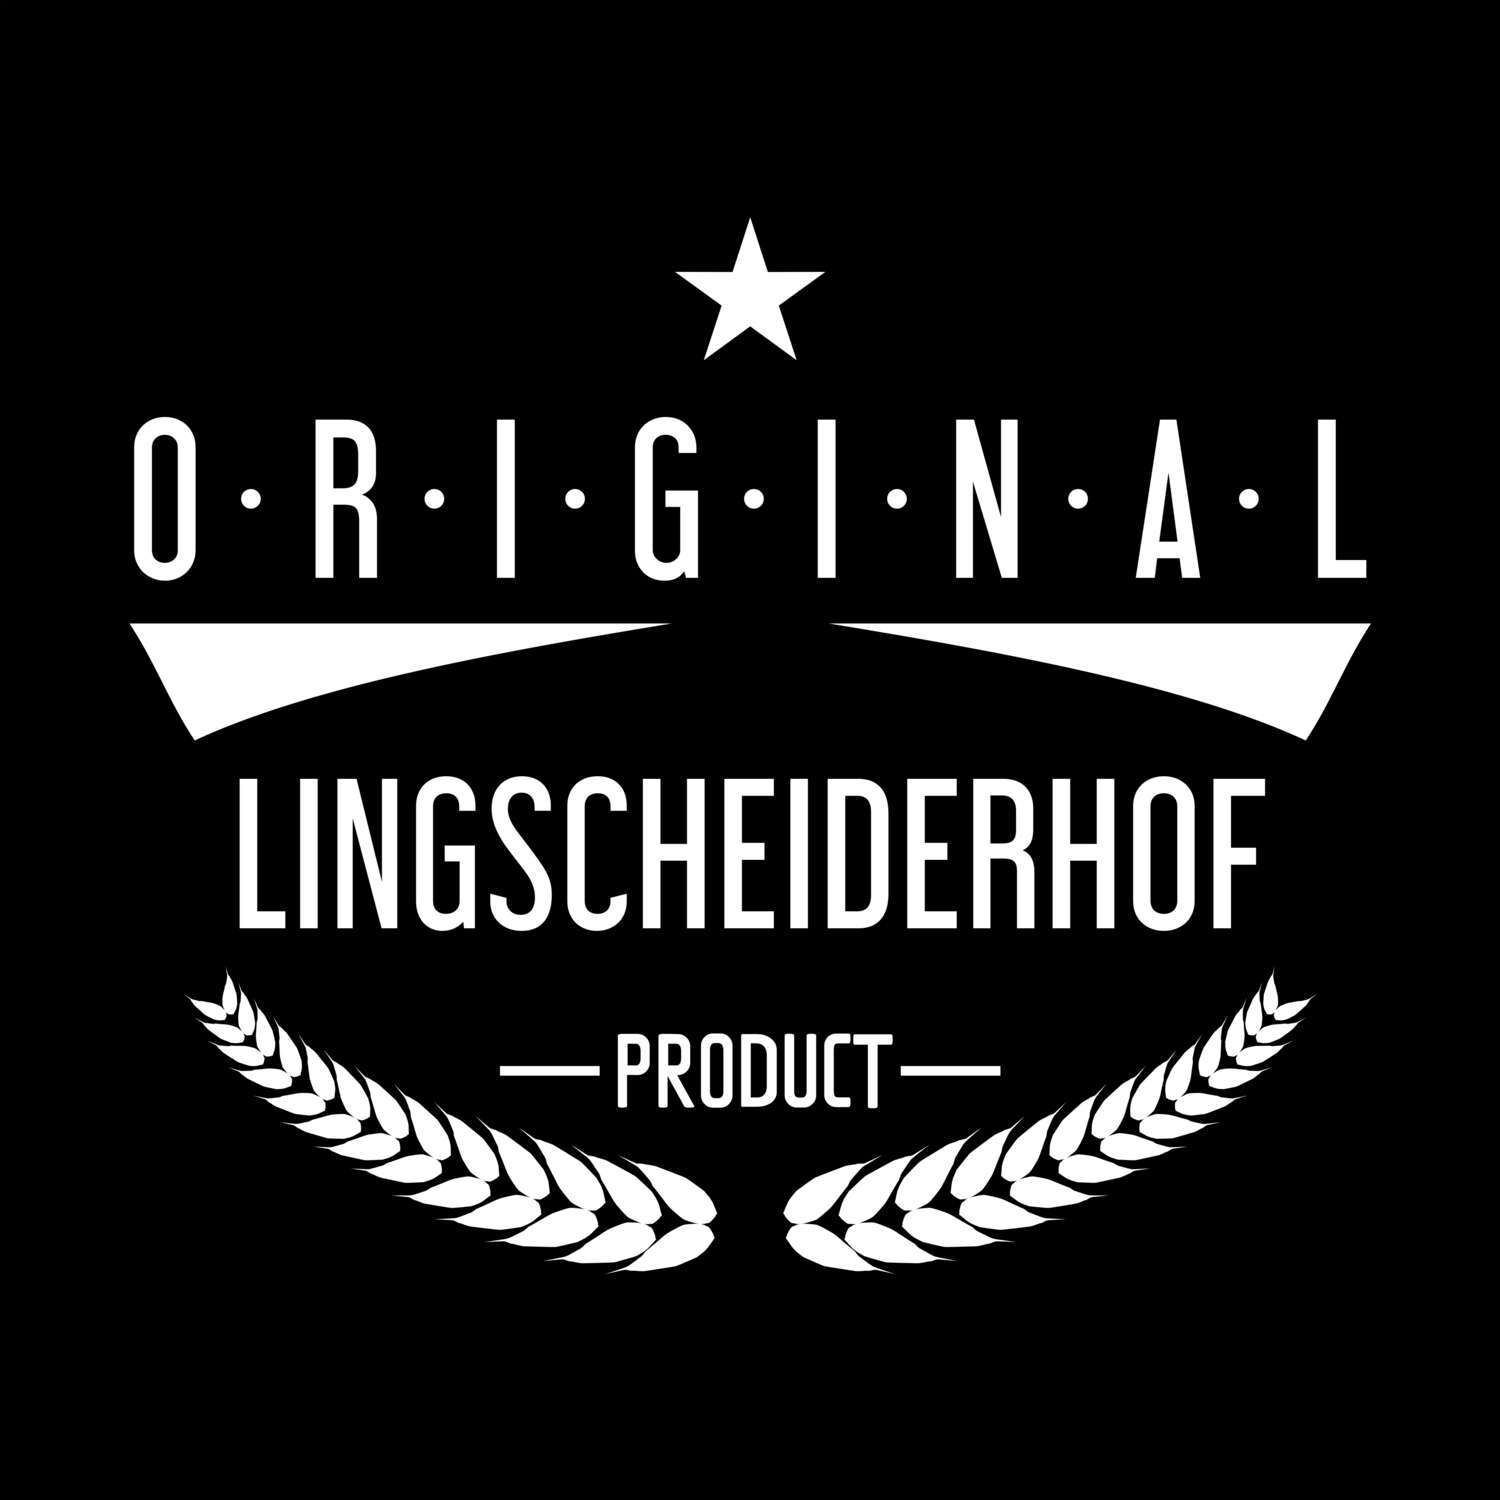 Lingscheiderhof T-Shirt »Original Product«